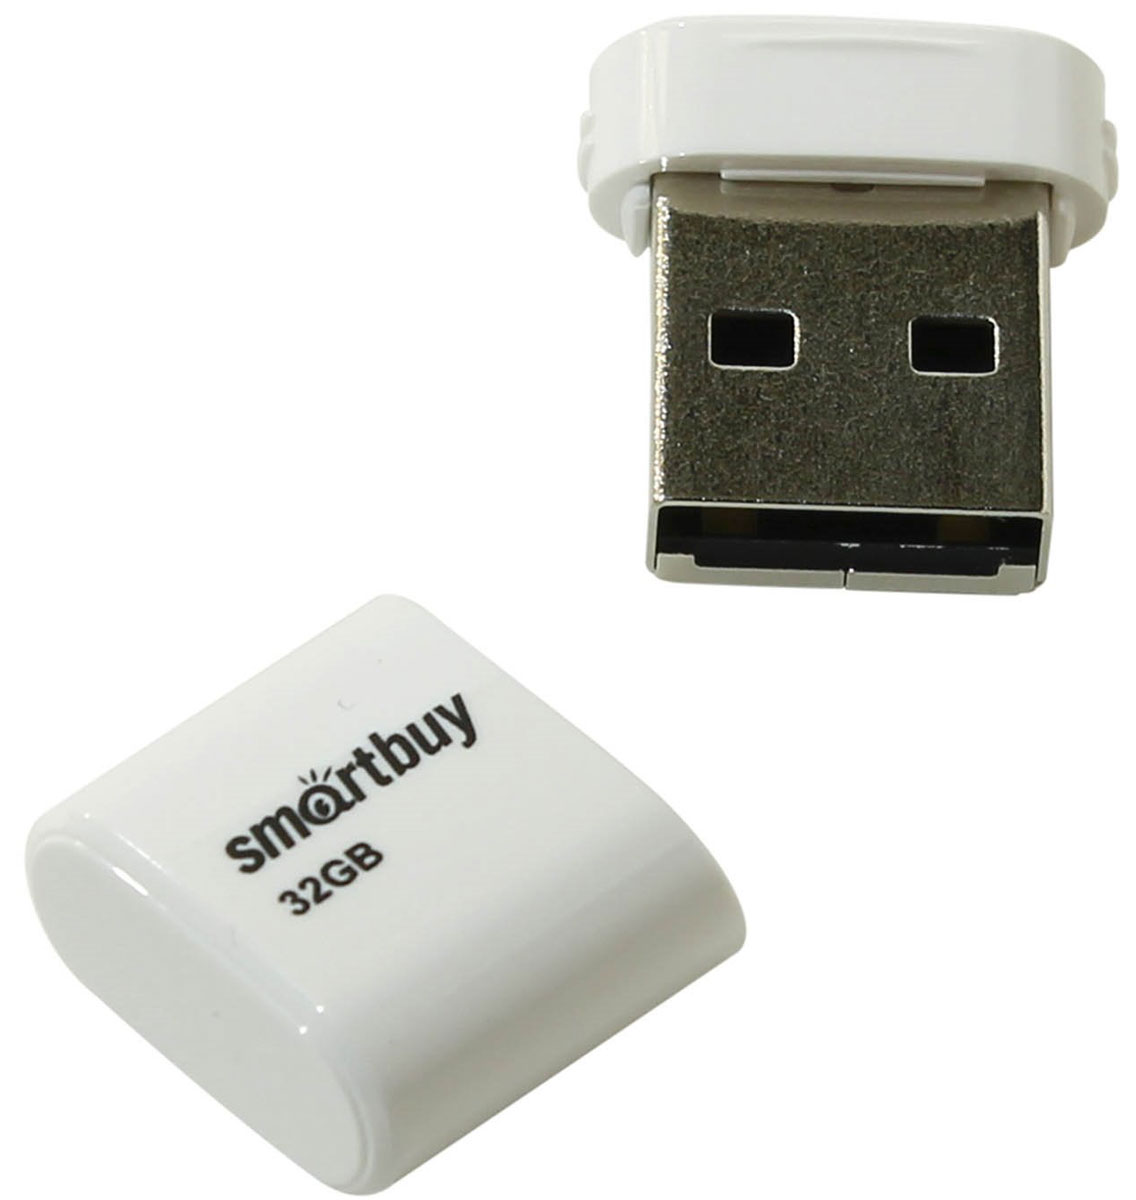 фото SmartBuy Lara 32GB, White USB-накопитель